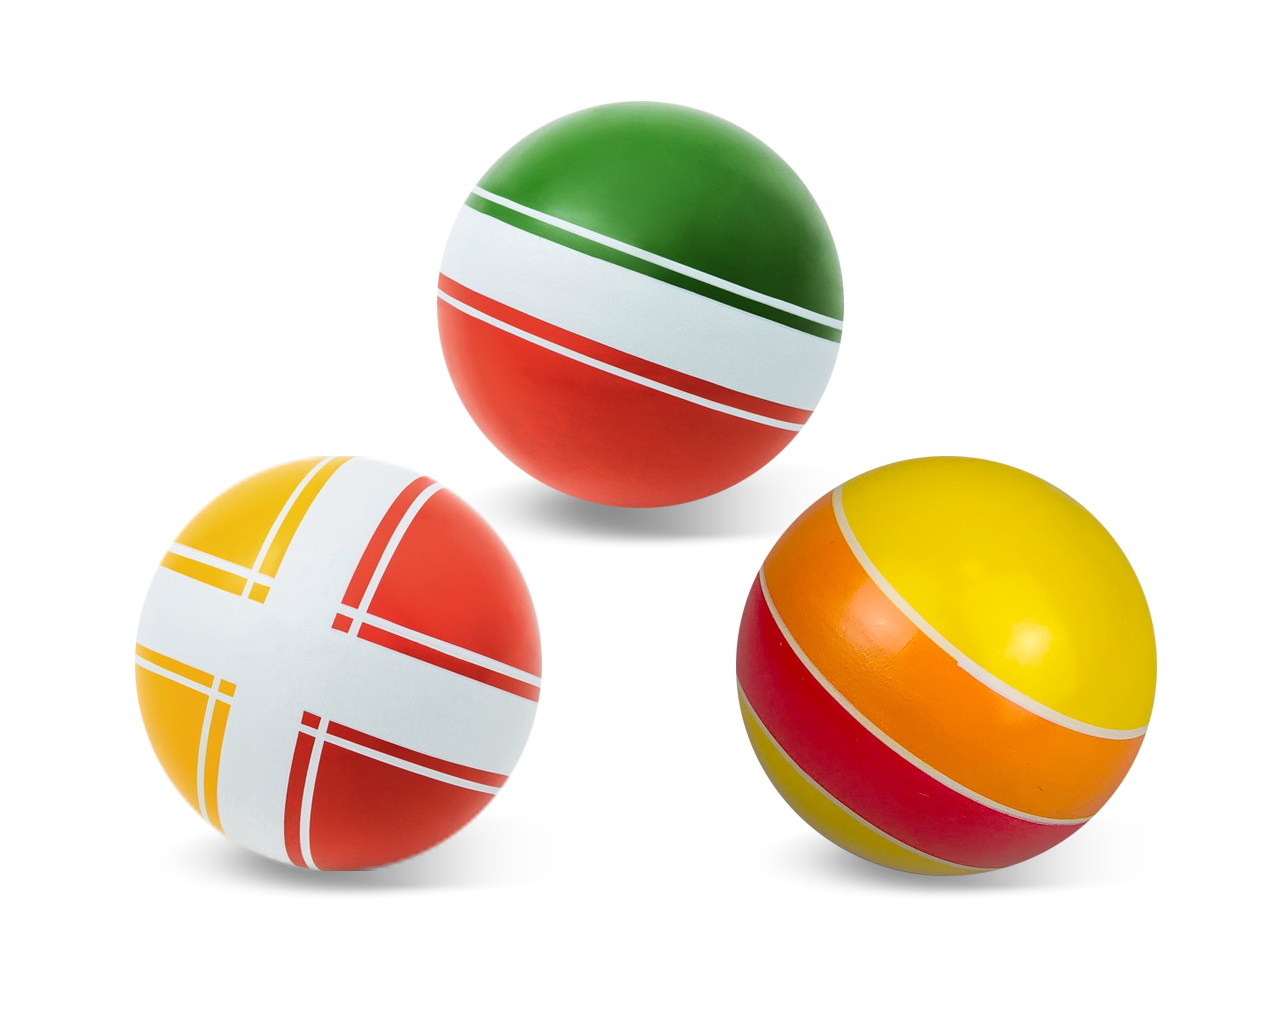 Мяч резиновый диаметр 200 мм. серия Классики, Чебоксары, Р3-200 